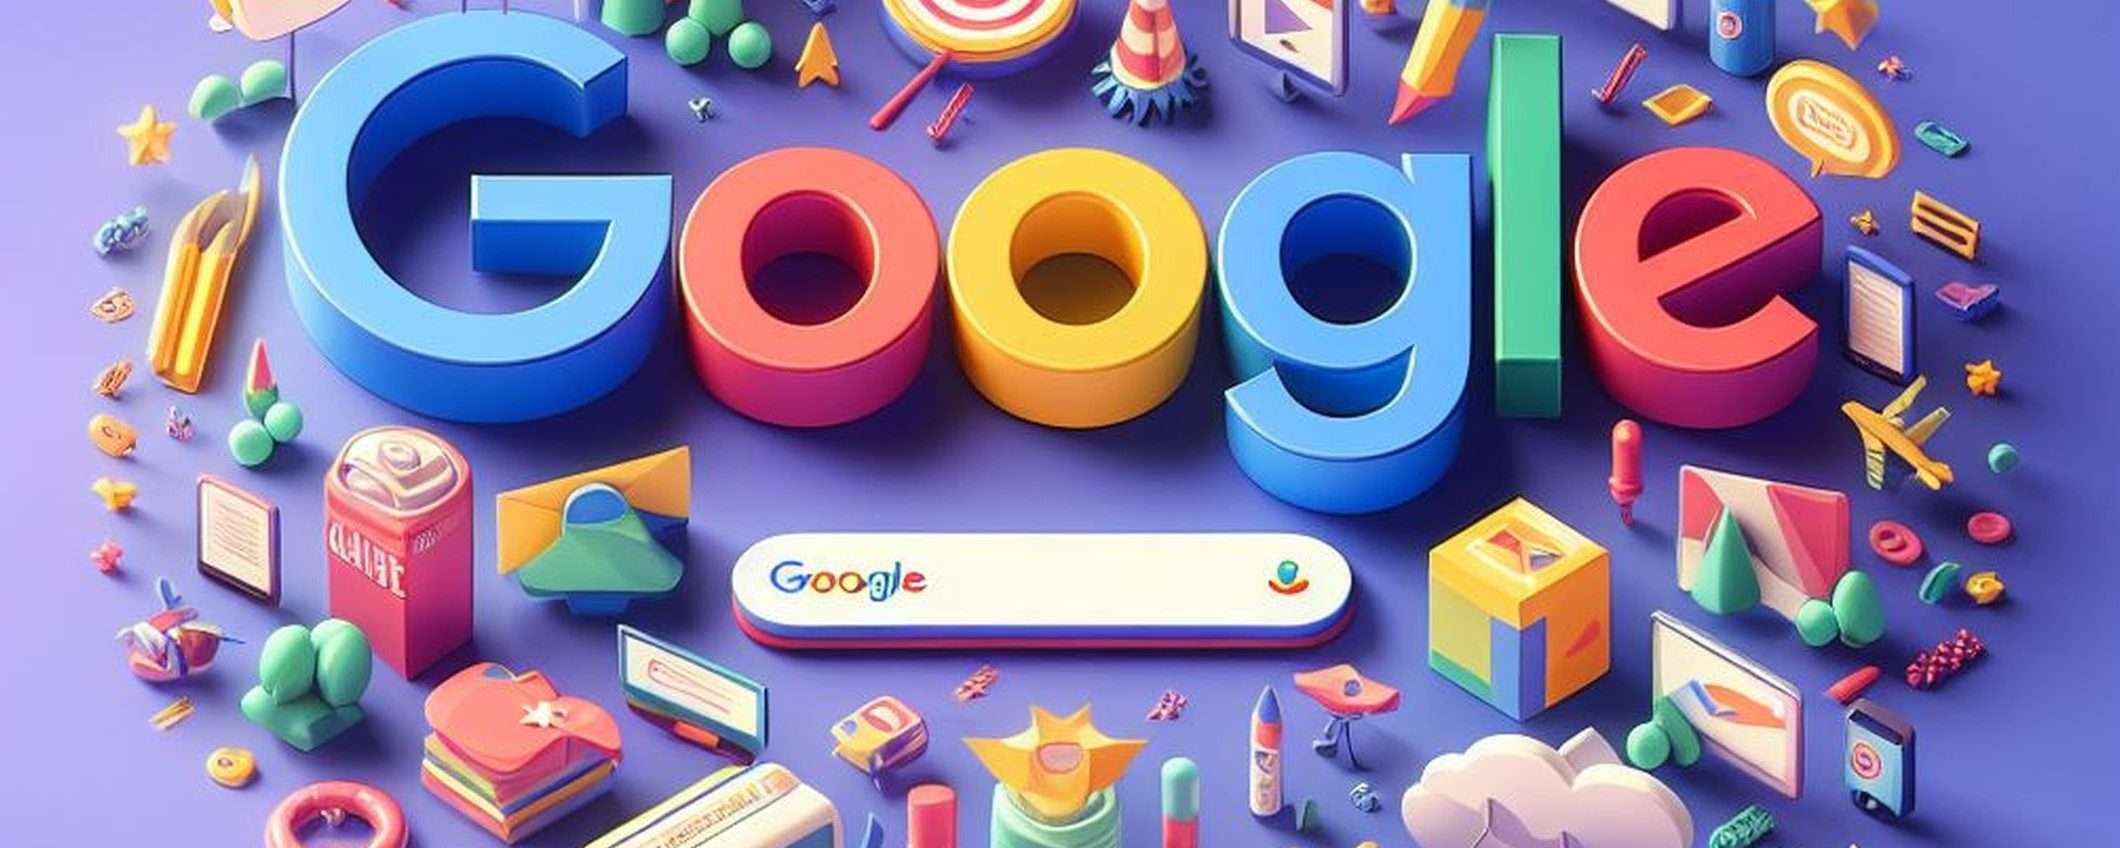 Google chiede di respingere il caso sull'advertising